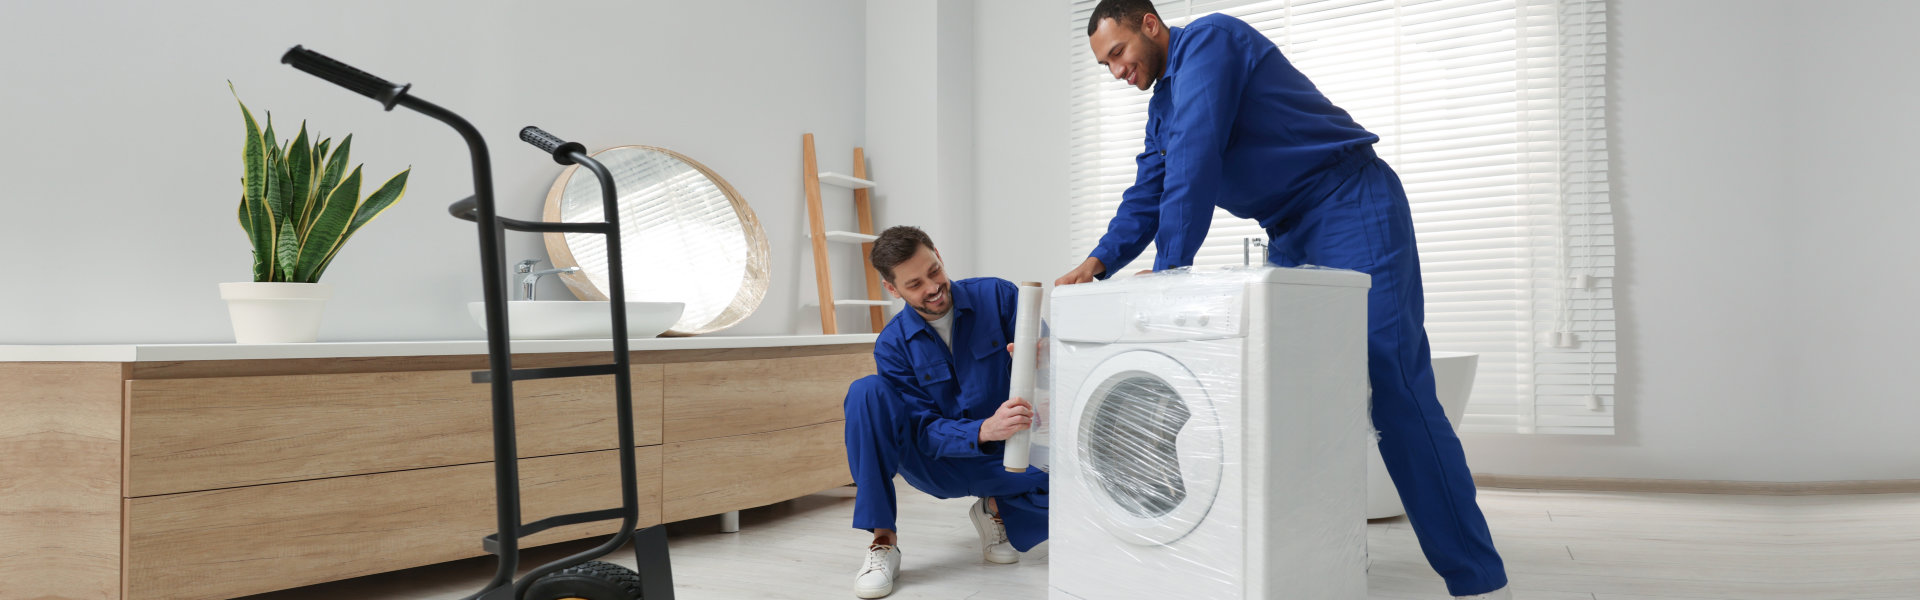 two men wrapping a washing machine